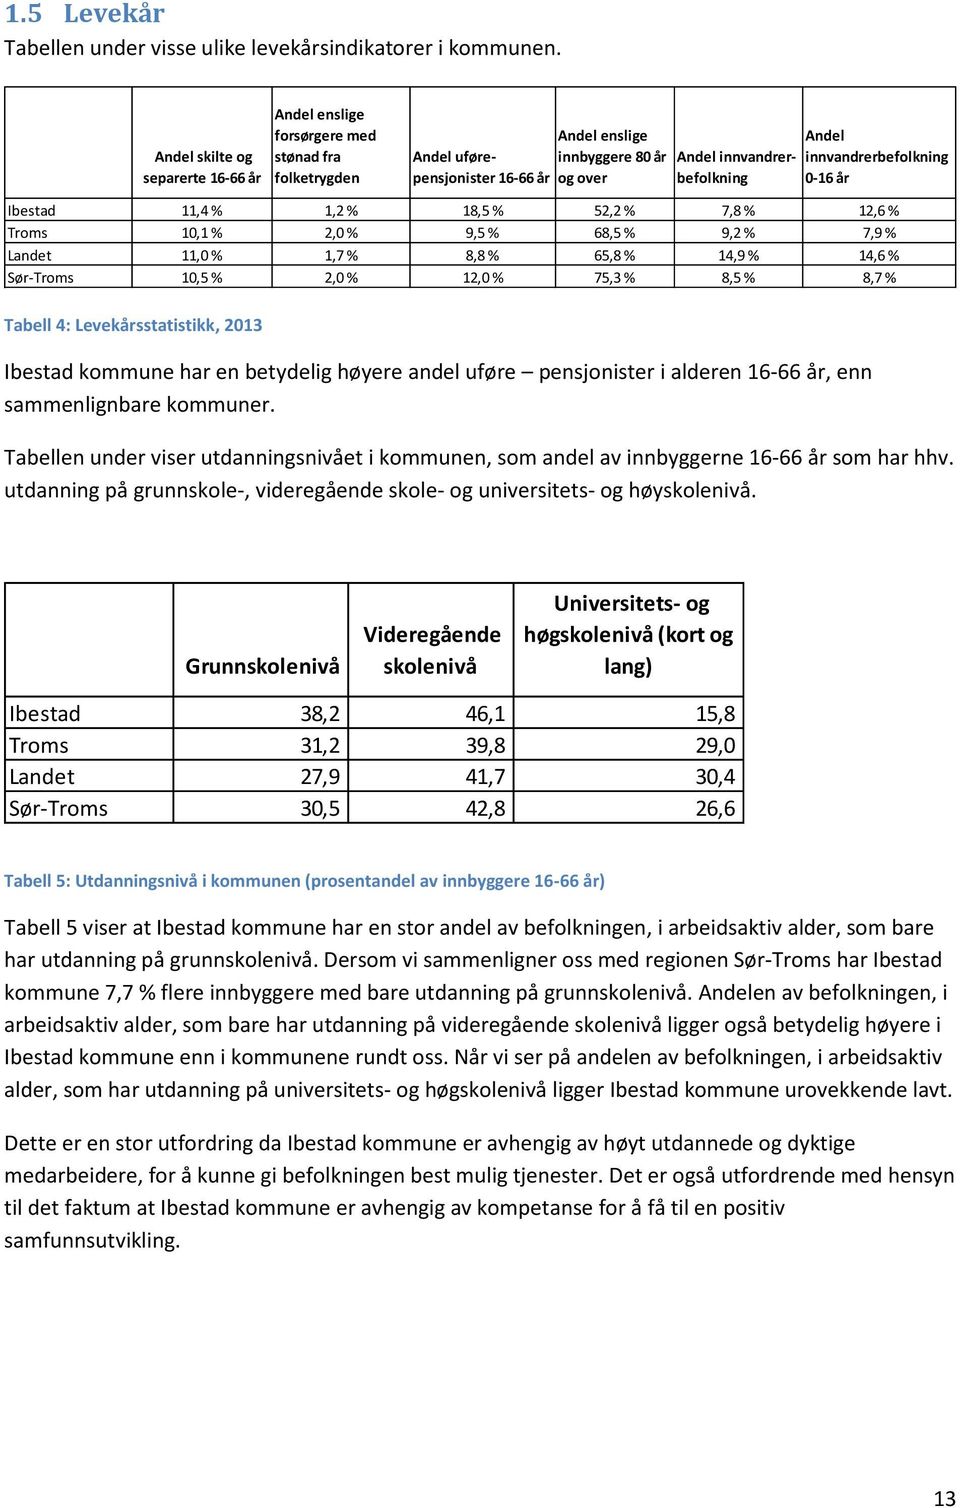 innvandrerbefolkning 0-16 år Ibestad 11,4 % 1,2 % 18,5 % 52,2 % 7,8 % 12,6 % Troms 10,1 % 2,0 % 9,5 % 68,5 % 9,2 % 7,9 % Landet 11,0 % 1,7 % 8,8 % 65,8 % 14,9 % 14,6 % Sør-Troms 10,5 % 2,0 % 12,0 %